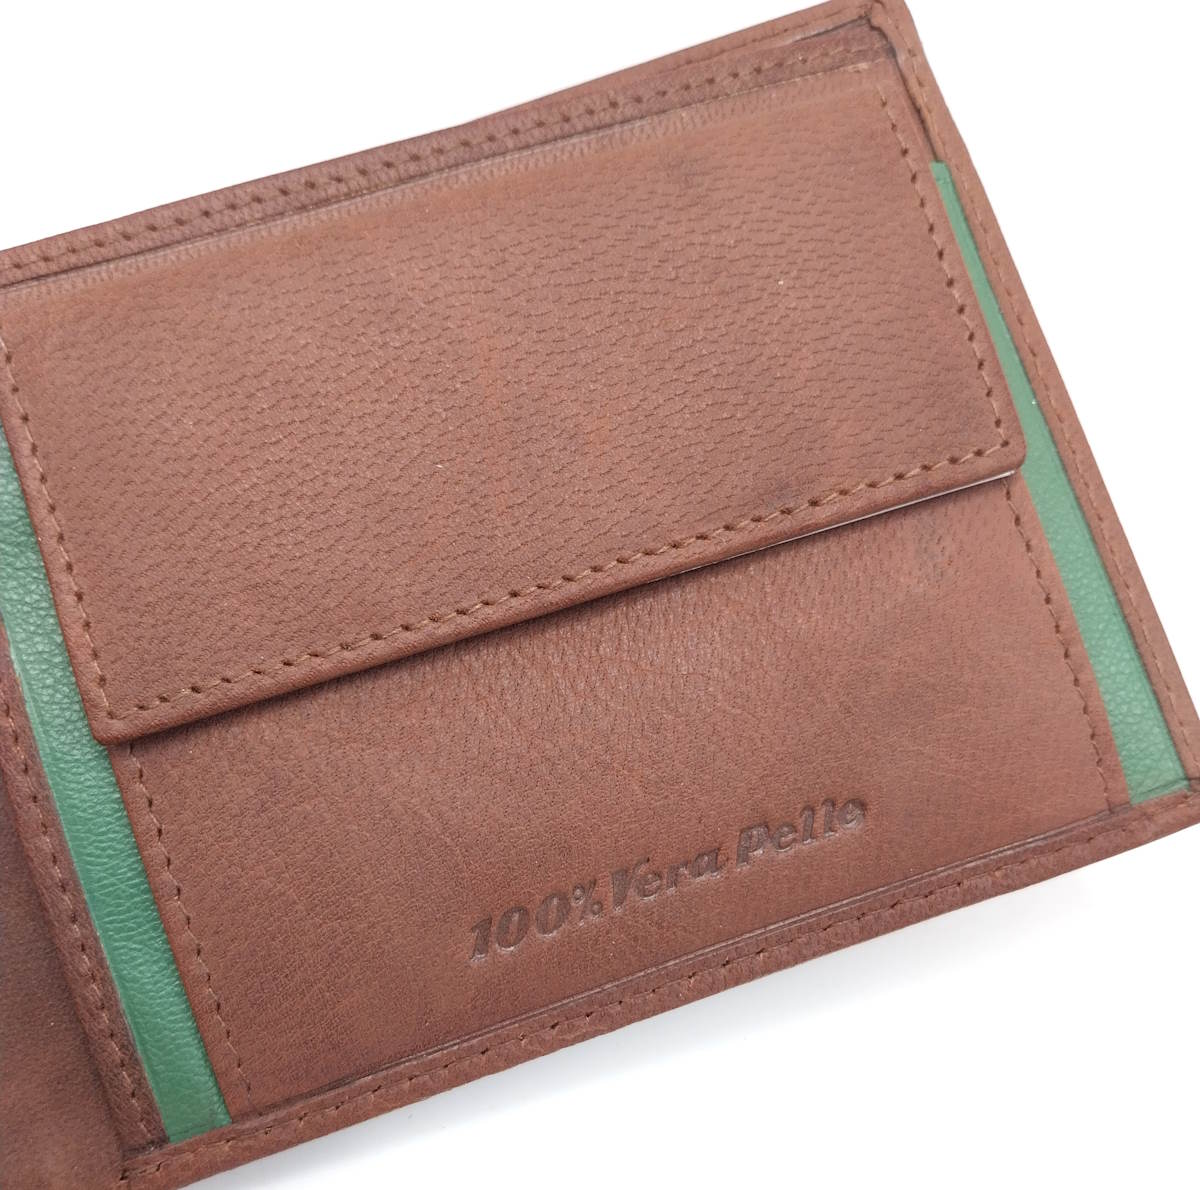 Genuine leather wallet, Armata di Mare, art. PDK380-1